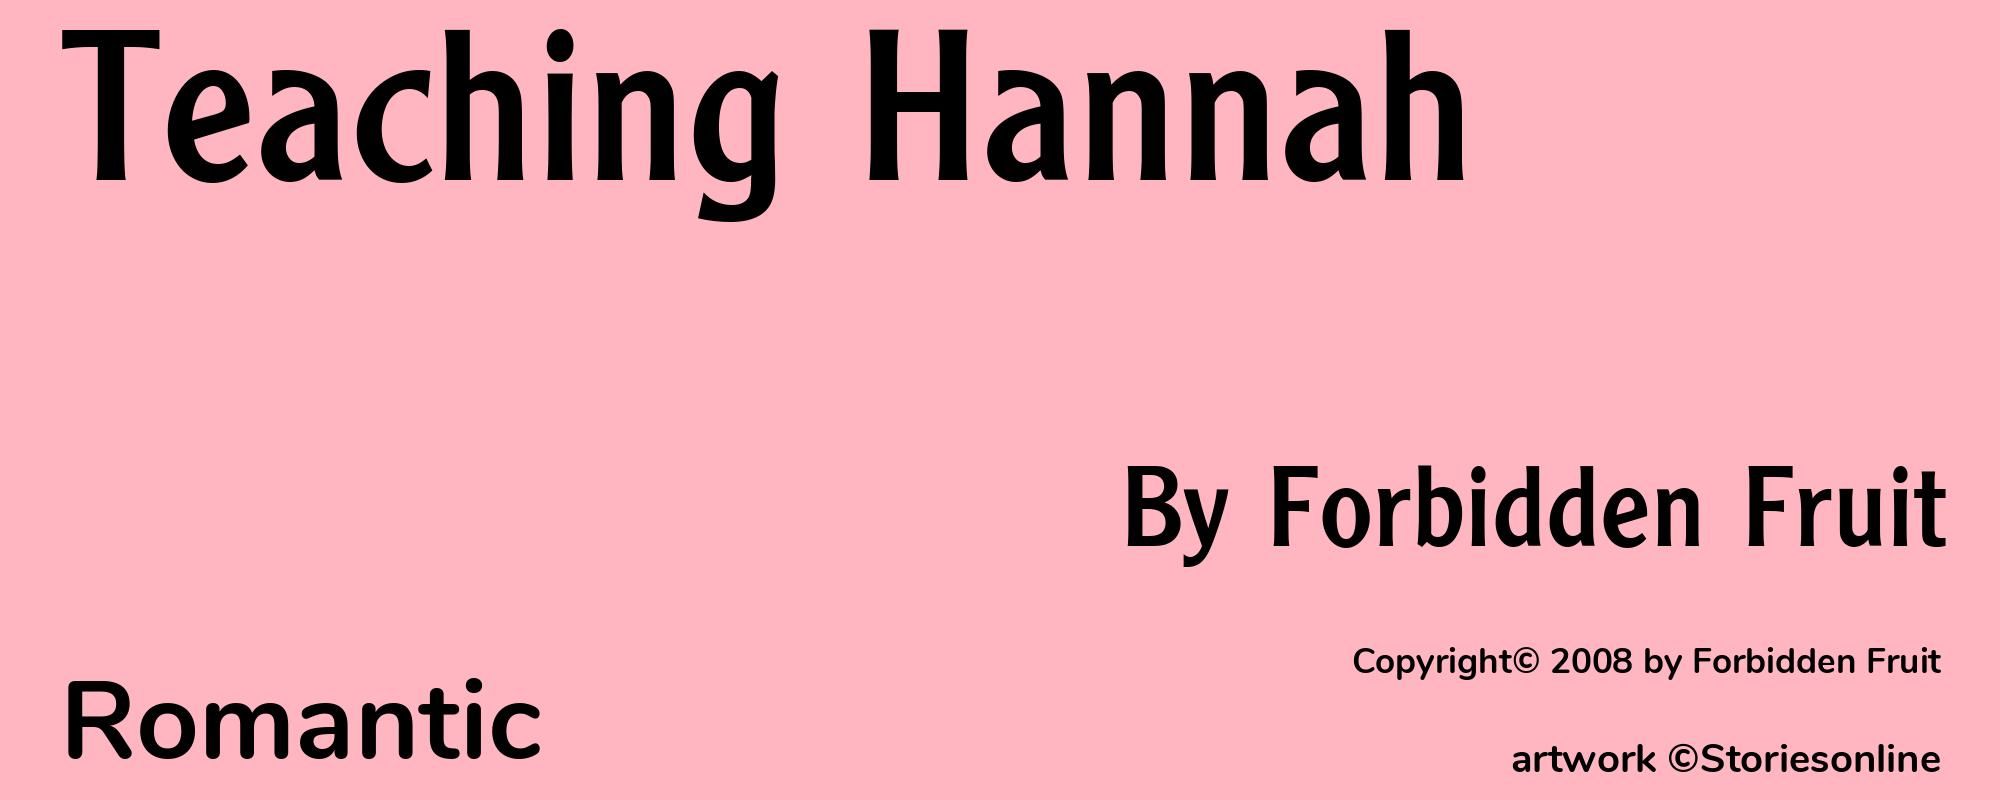 Teaching Hannah - Cover